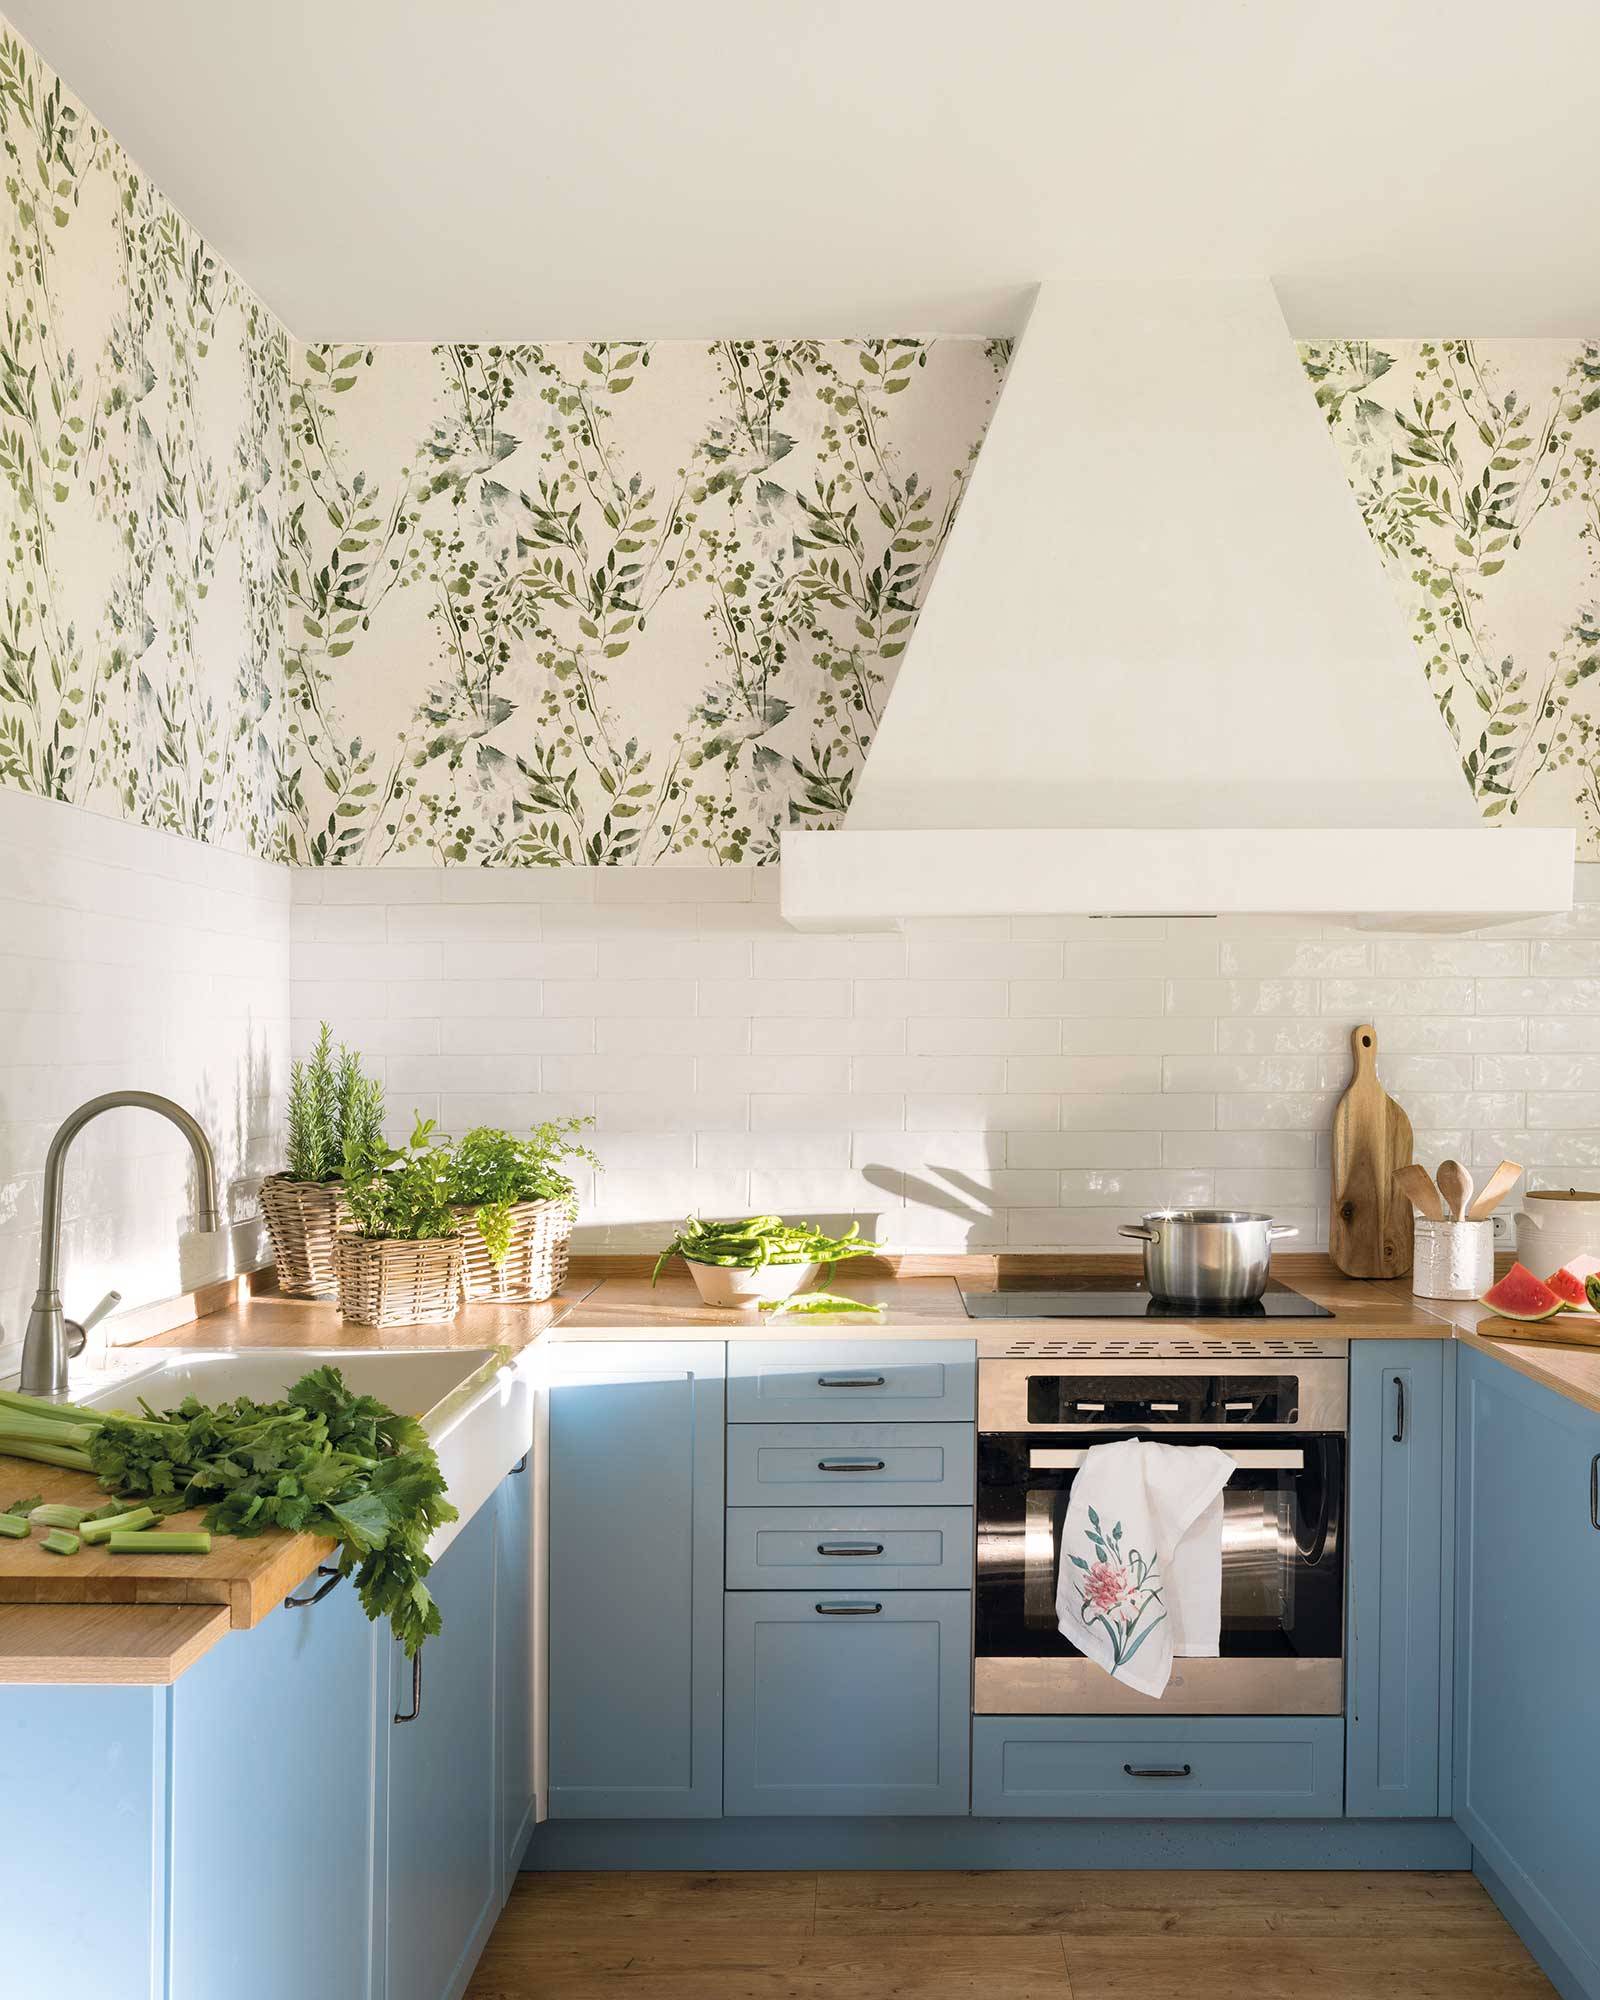 Cocina pequeña de estilo vintage con armarios en color azul y papel pintado botánico.